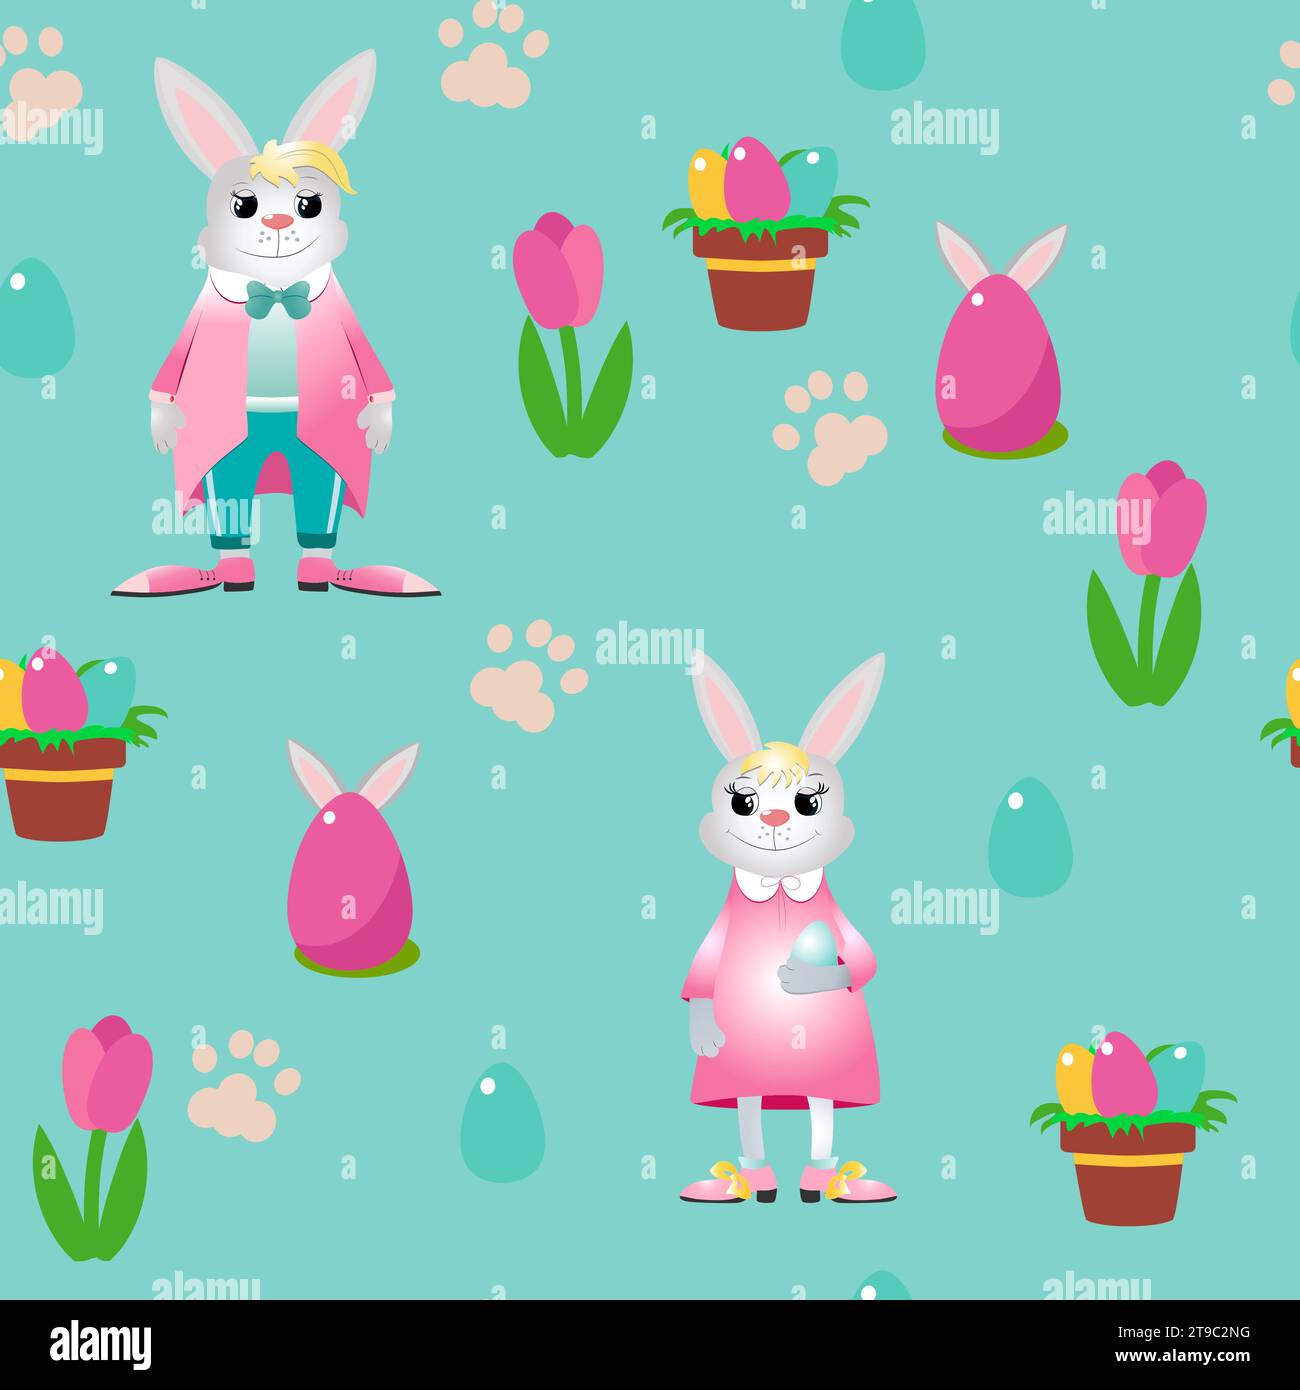 Osterkaninchen mit nahtlosem Muster in Kleidung und ein dekoratives Ei mit Ohren und einem dekorativen Topf Tulpe und Kaninchen Fußabdruck auf türkisfarbenem Hintergrund. Stock Vektor